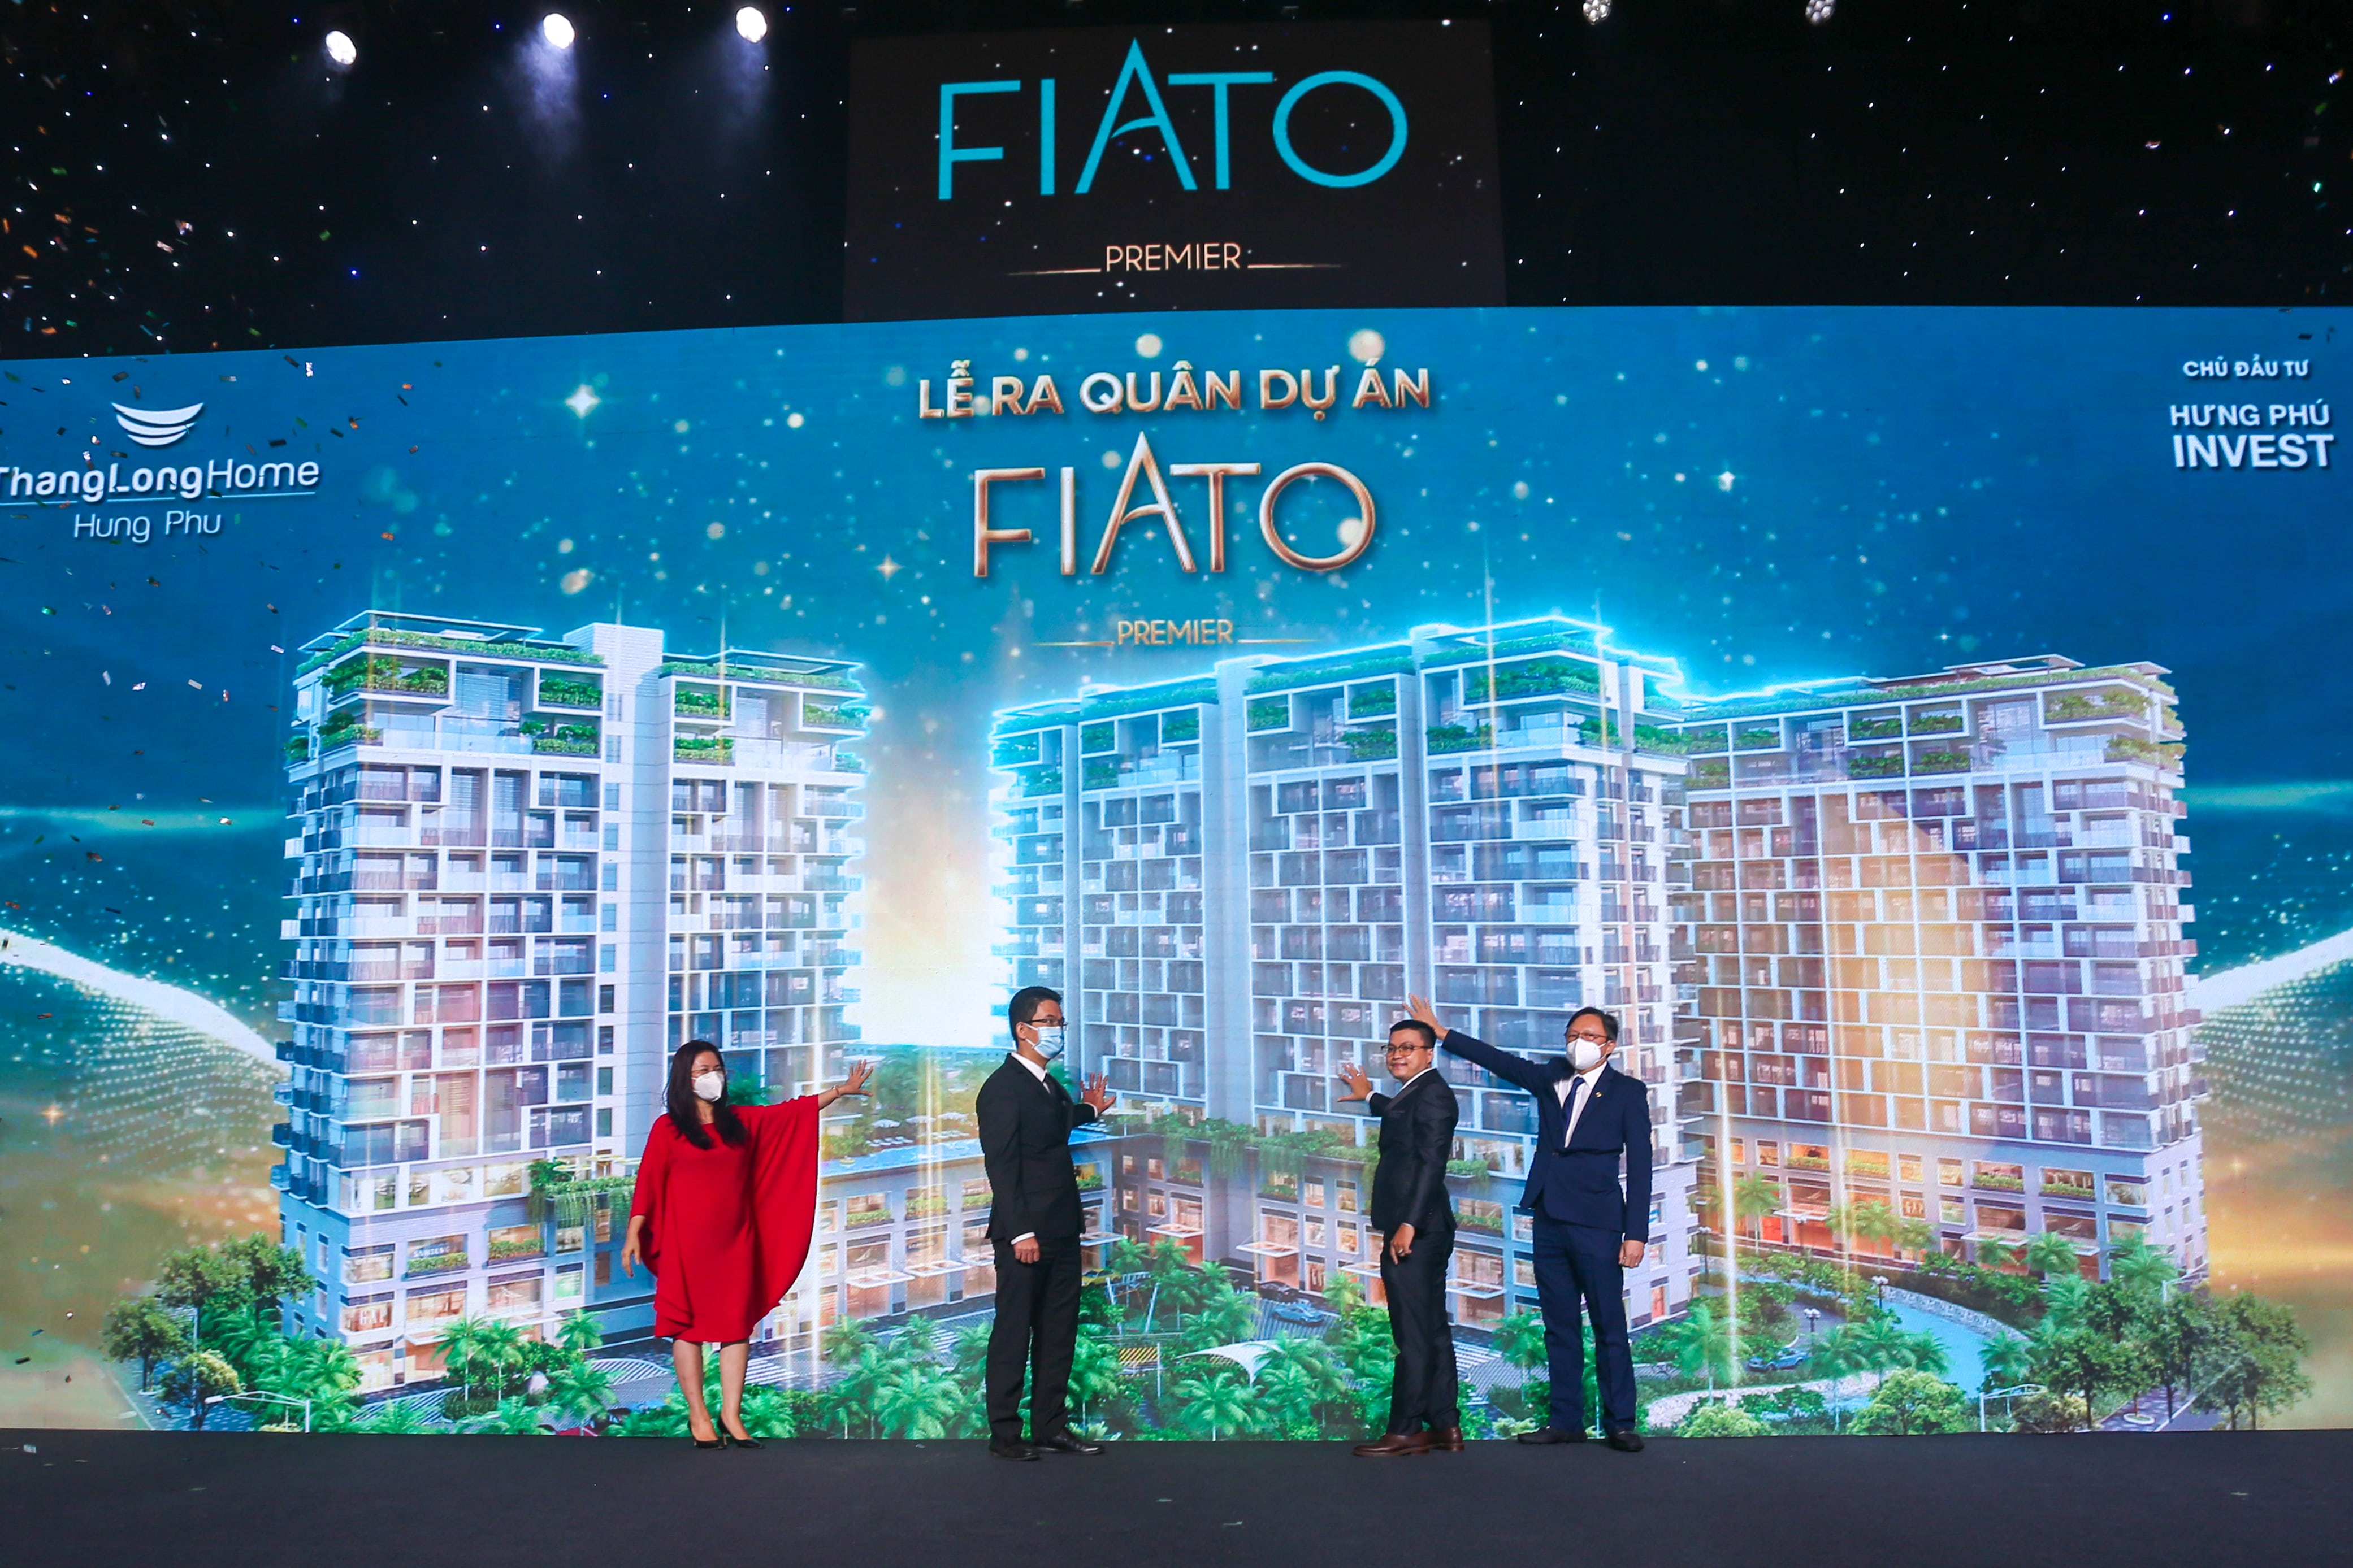 Đại diện Hưng Phú Invest, Thang Long Real Group và 2 đối tác phân phối chính thức TLH, Everland Group chính thức kick-off dự án FIATO Premier